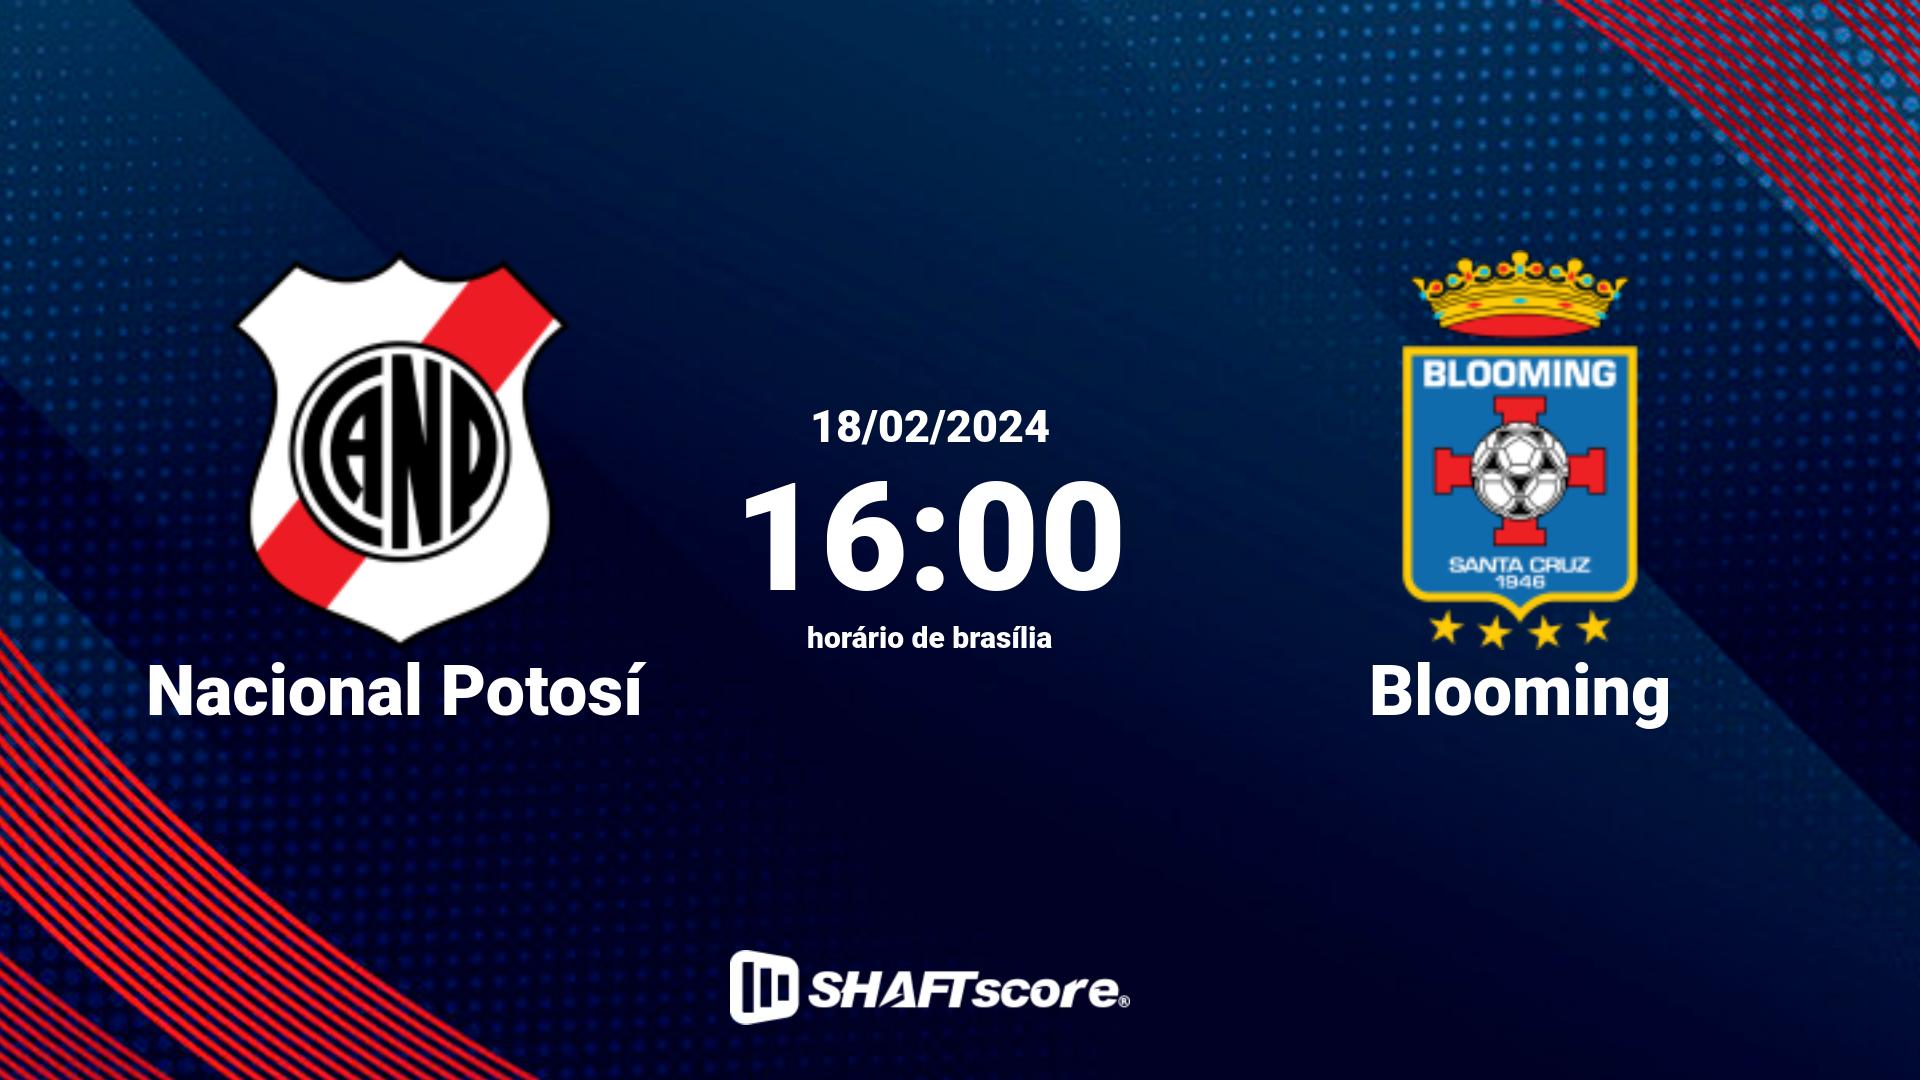 Estatísticas do jogo Nacional Potosí vs Blooming 18.02 16:00